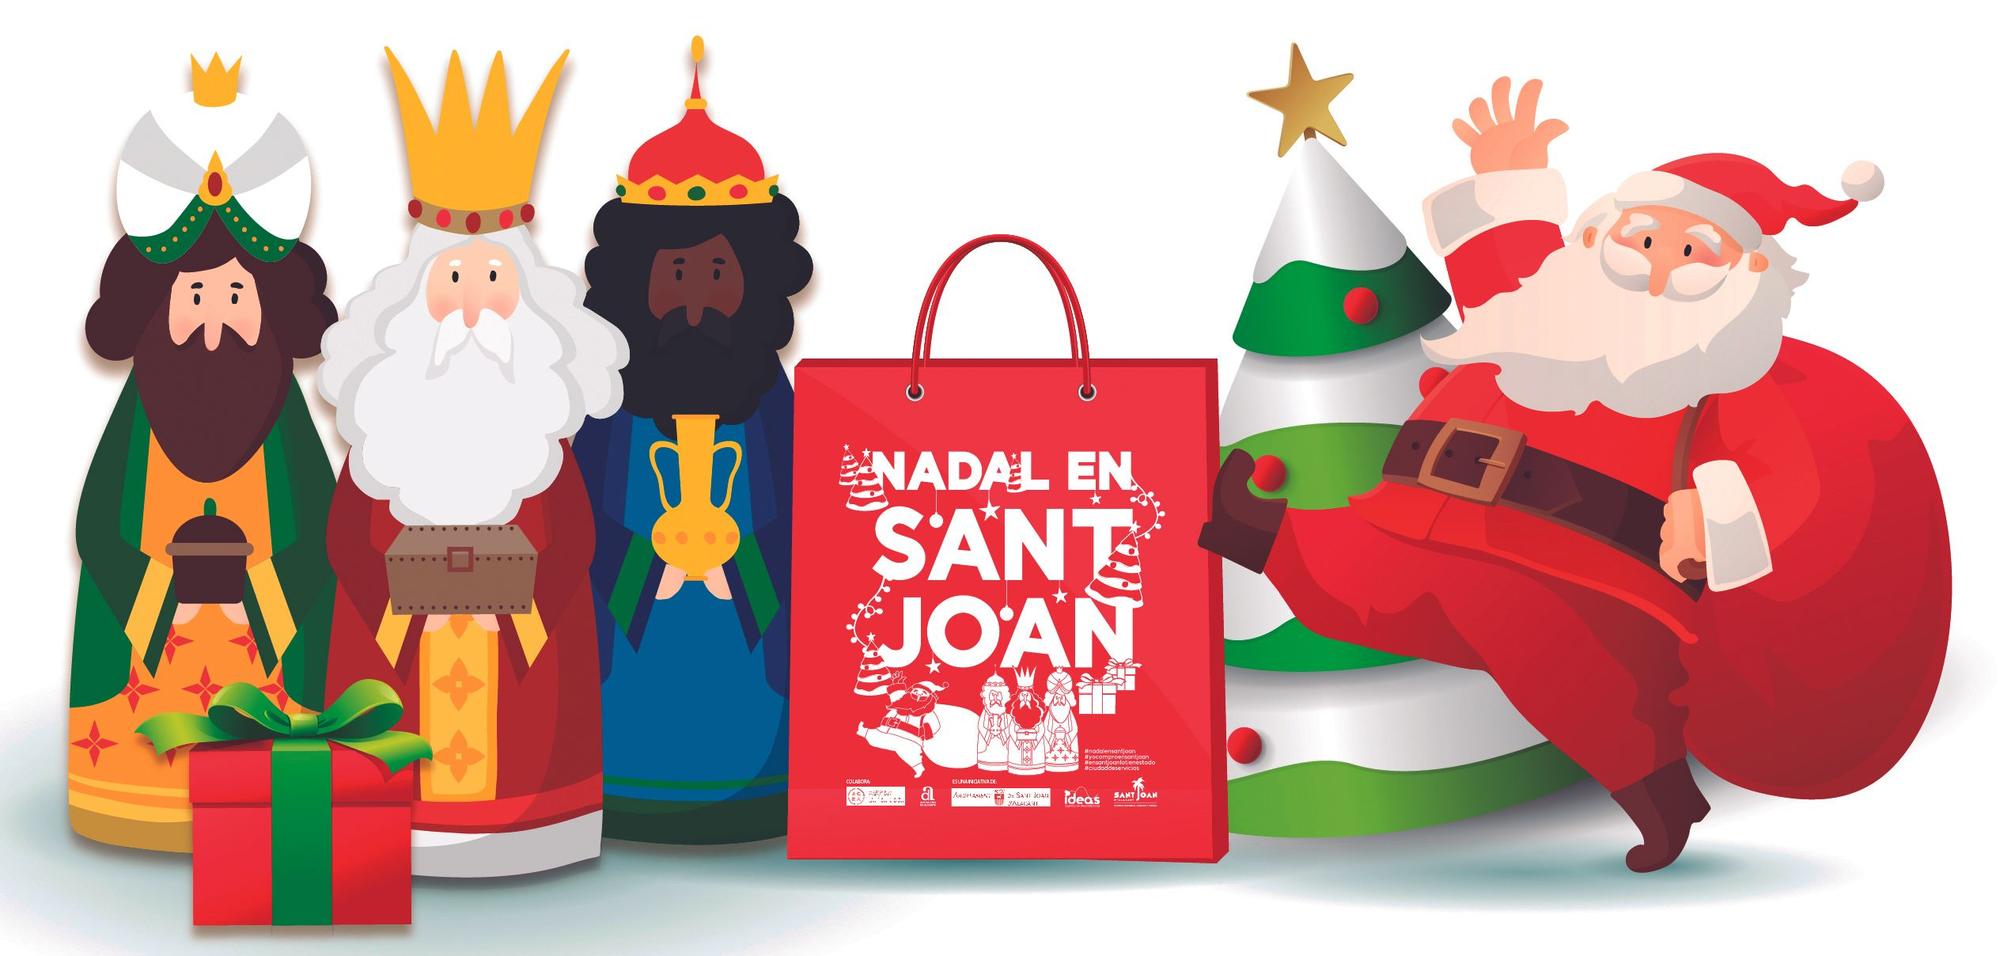 La campaña de Navidad en Sant Joan arrancó el pasado día 4 con el encendido del alumbrado navideño y hasta el 6 de enero acogerá actividades.